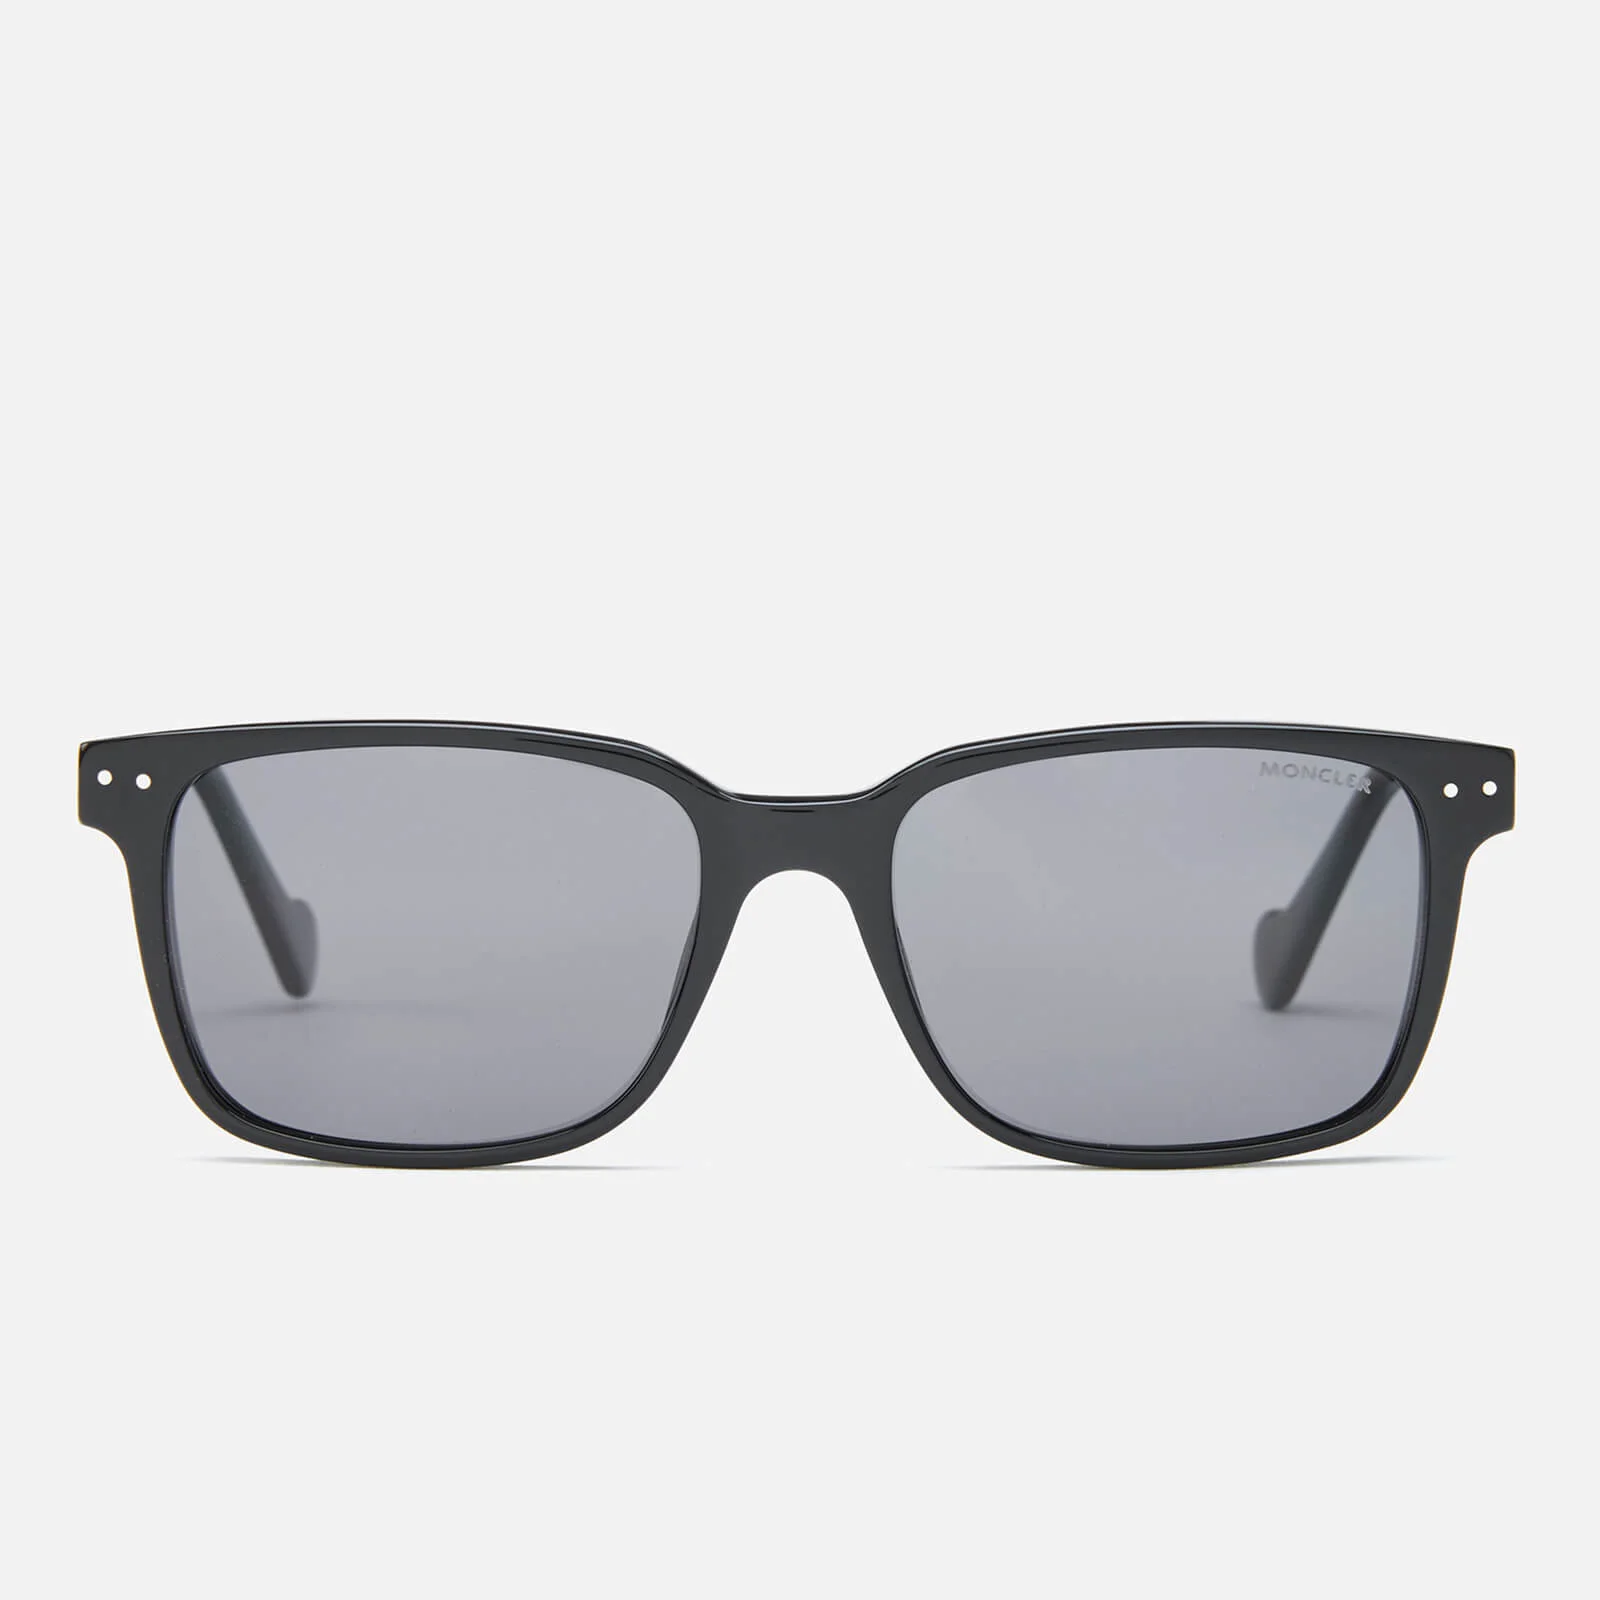 Moncler Men's Square Frame Sunglasses - Shiny Black/Green Image 1